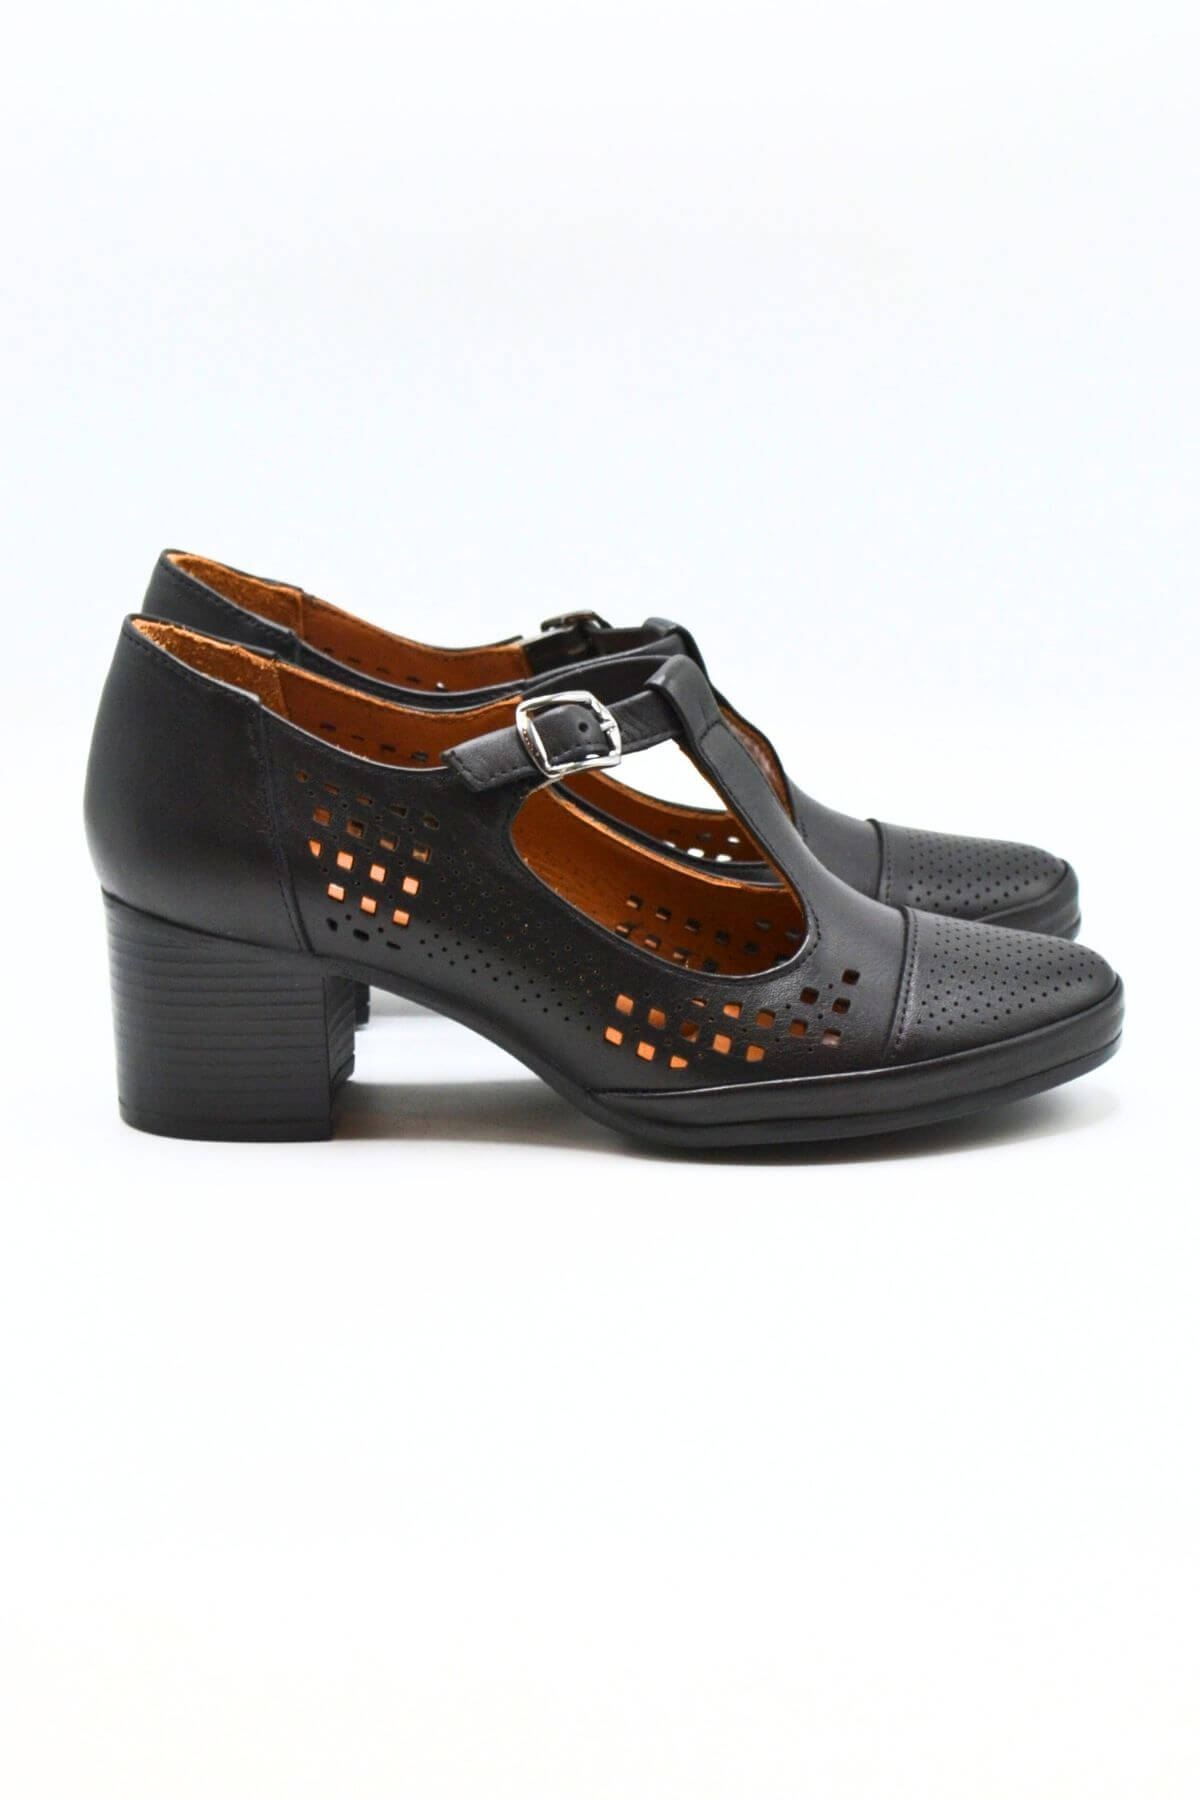 Kadın Yazlık Topuklu Deri Ayakkabı Siyah 1911923Y - Thumbnail